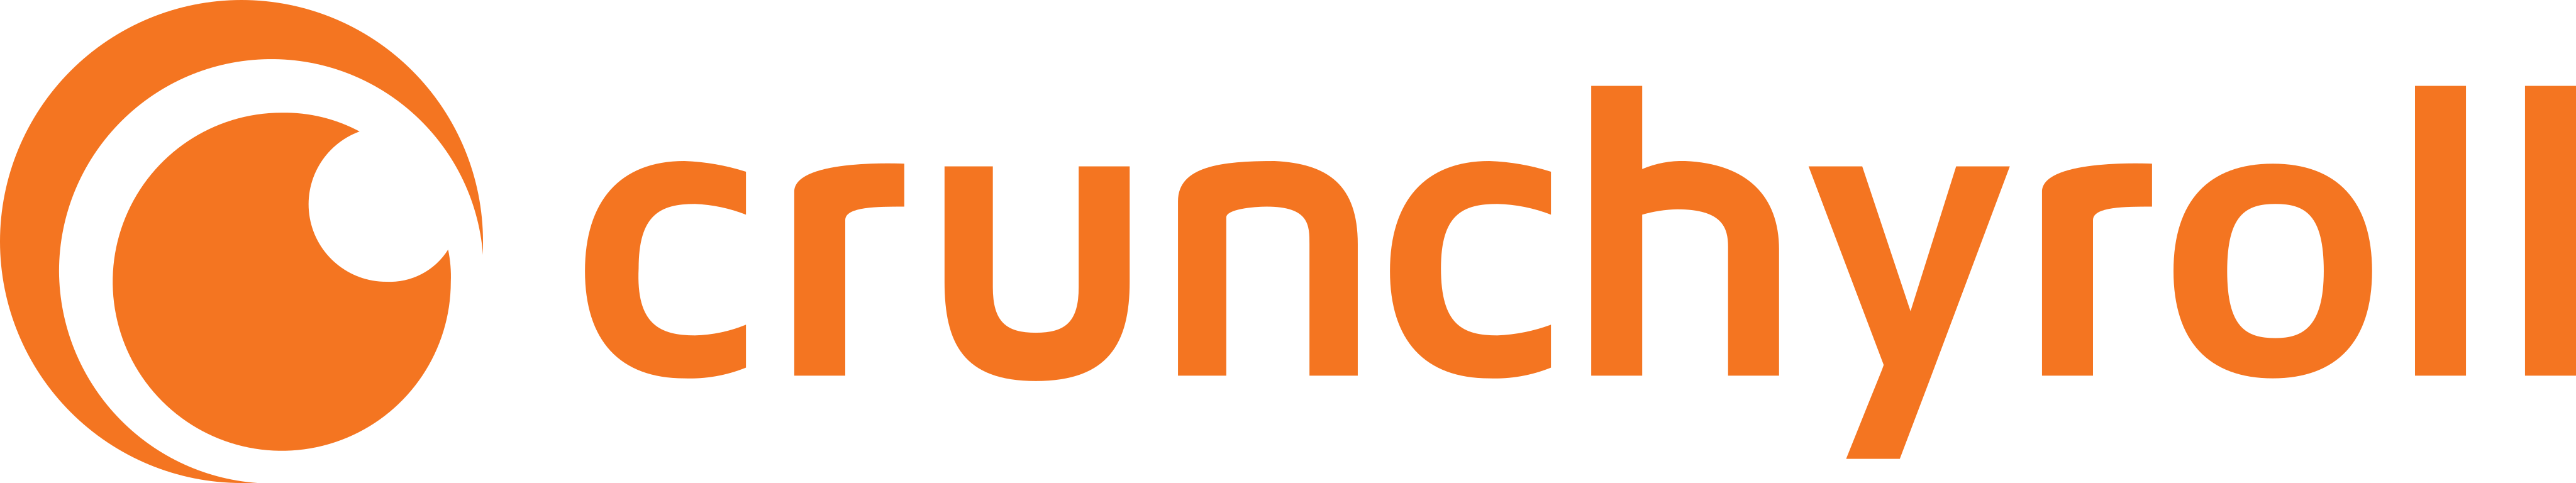 Crunchyroll Logo.